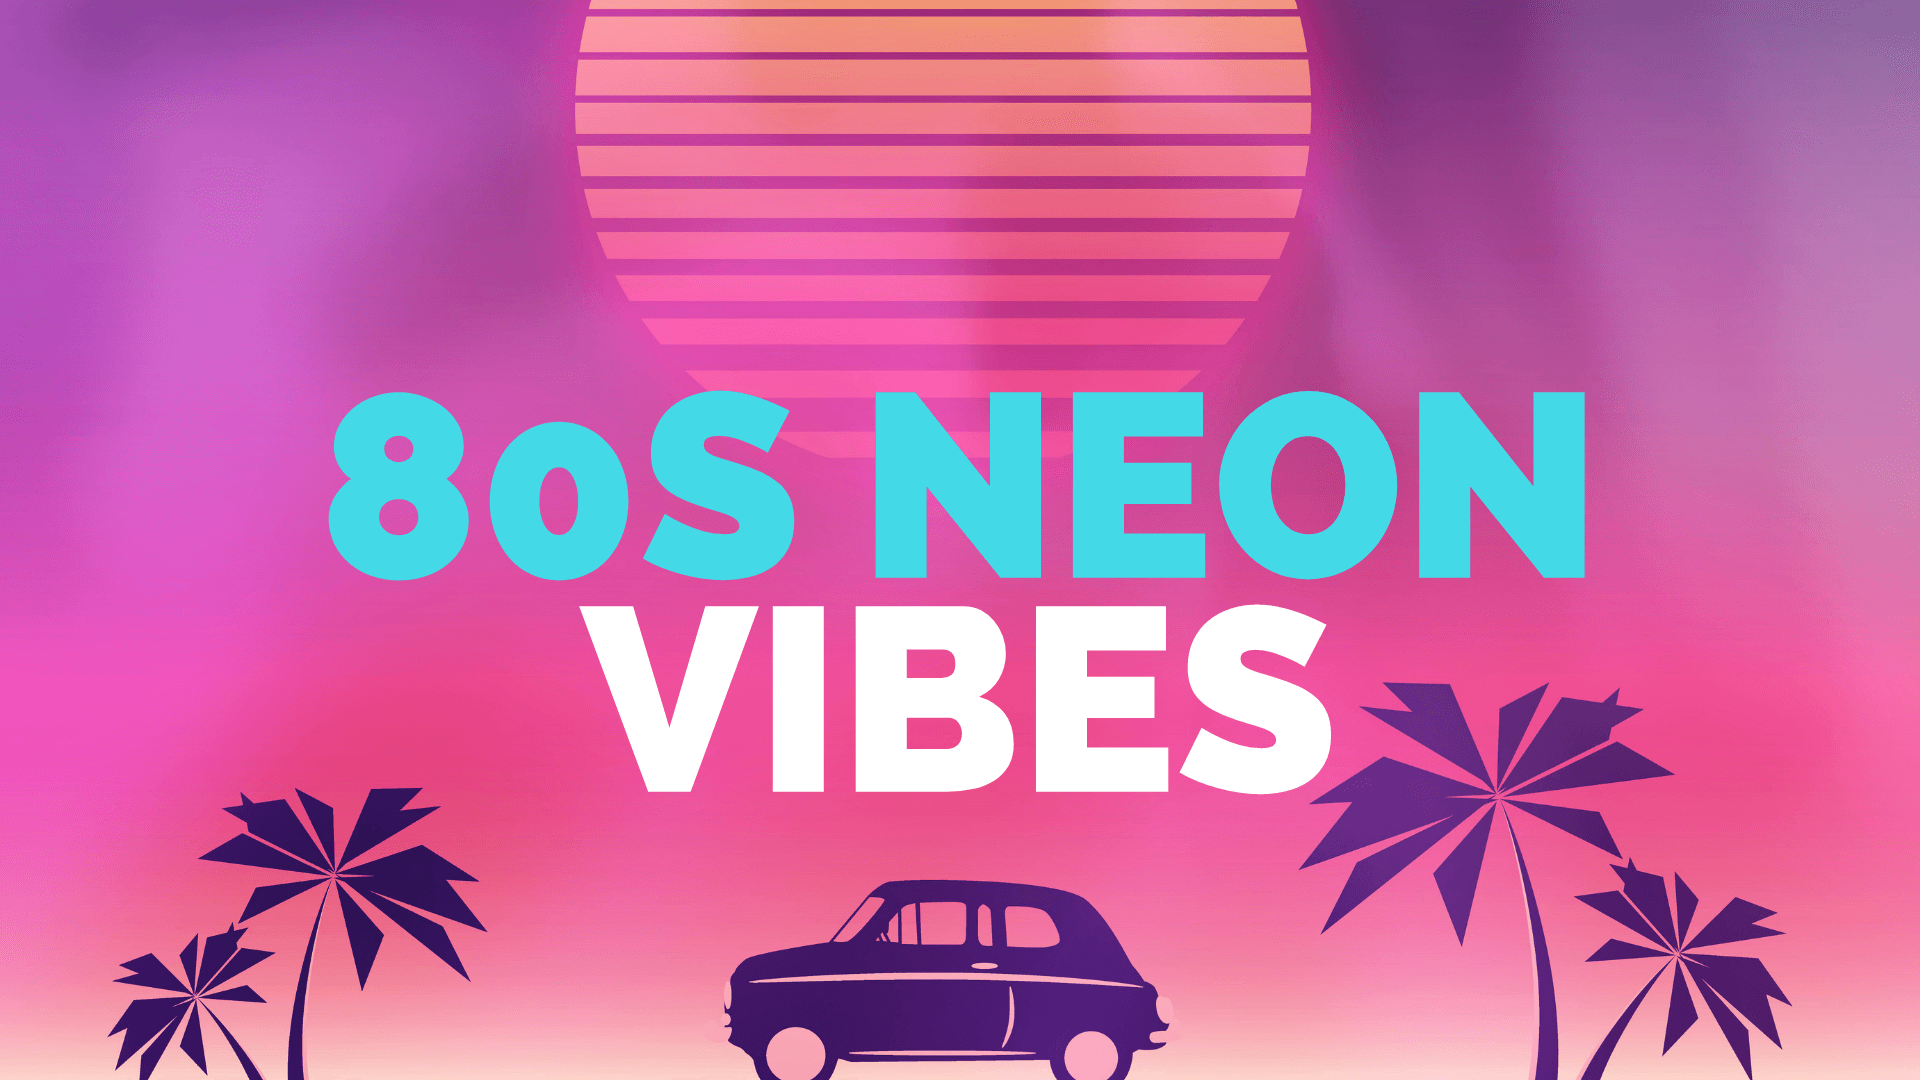 80s Neon Vibes